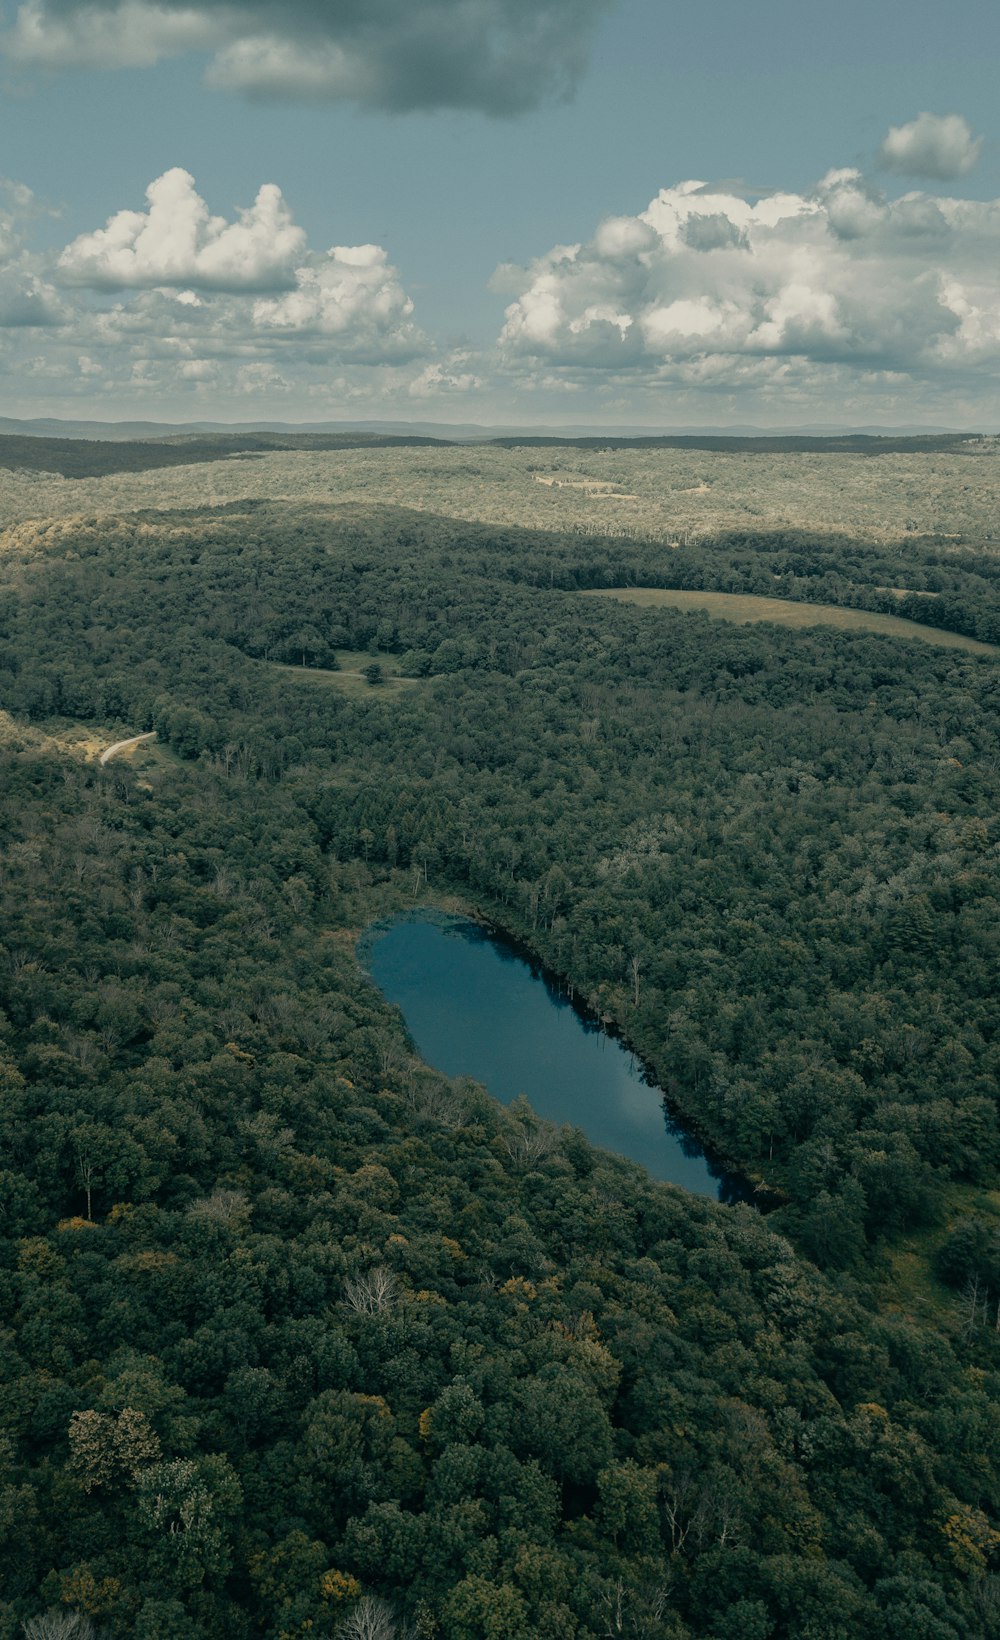 Luftaufnahme des Sees umgeben von grünen Bäumen während des Tages